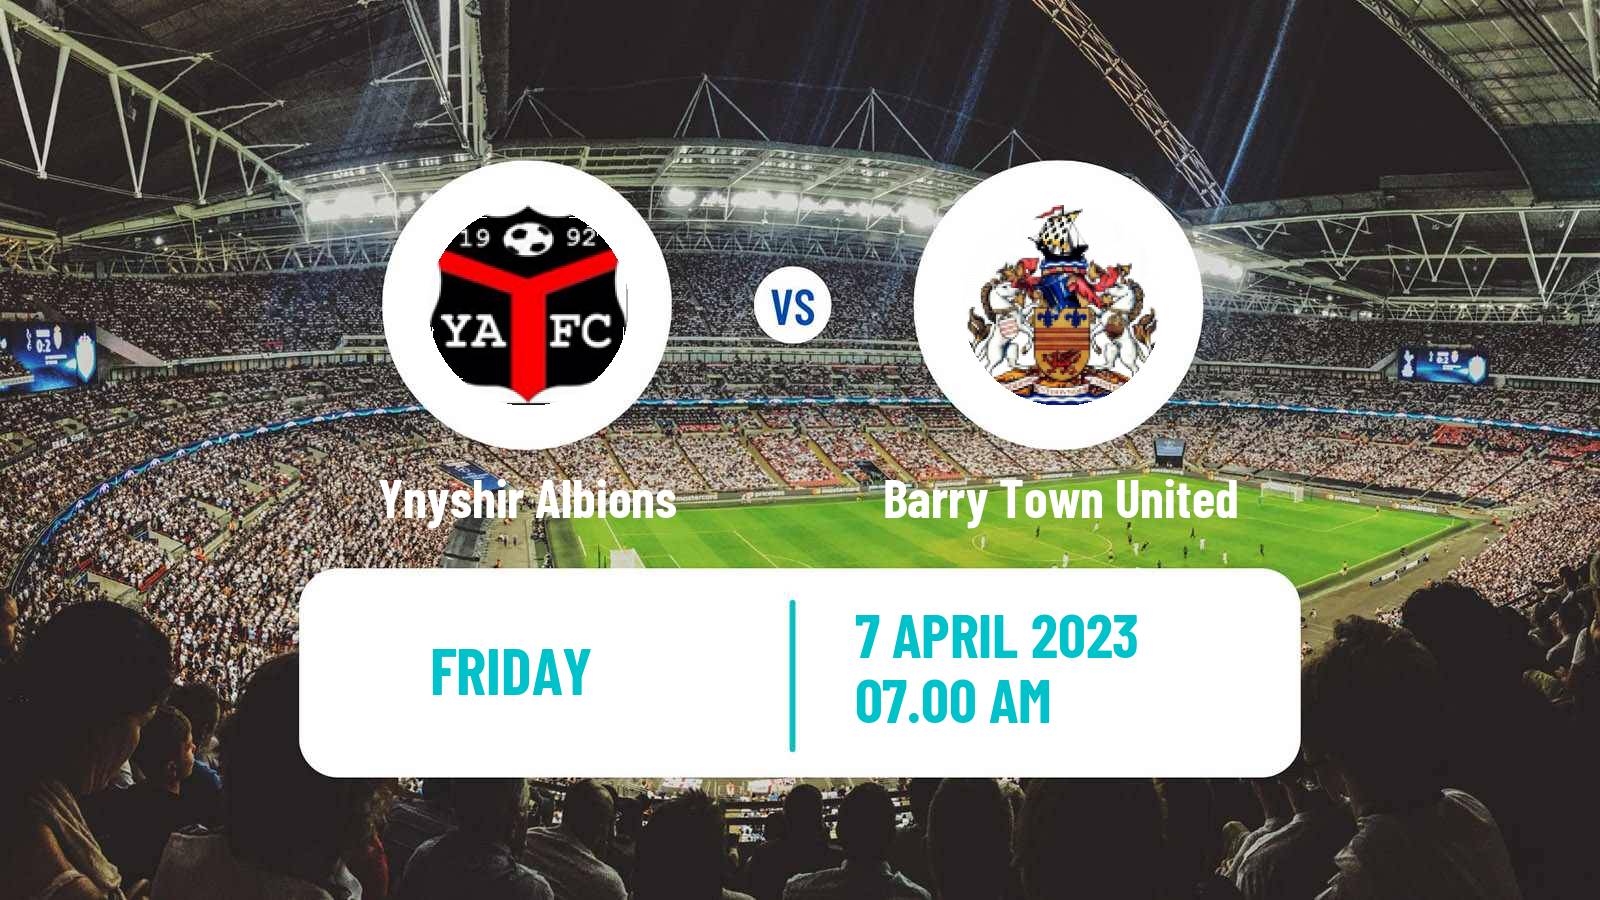 Soccer Welsh Cymru South Ynyshir Albions - Barry Town United